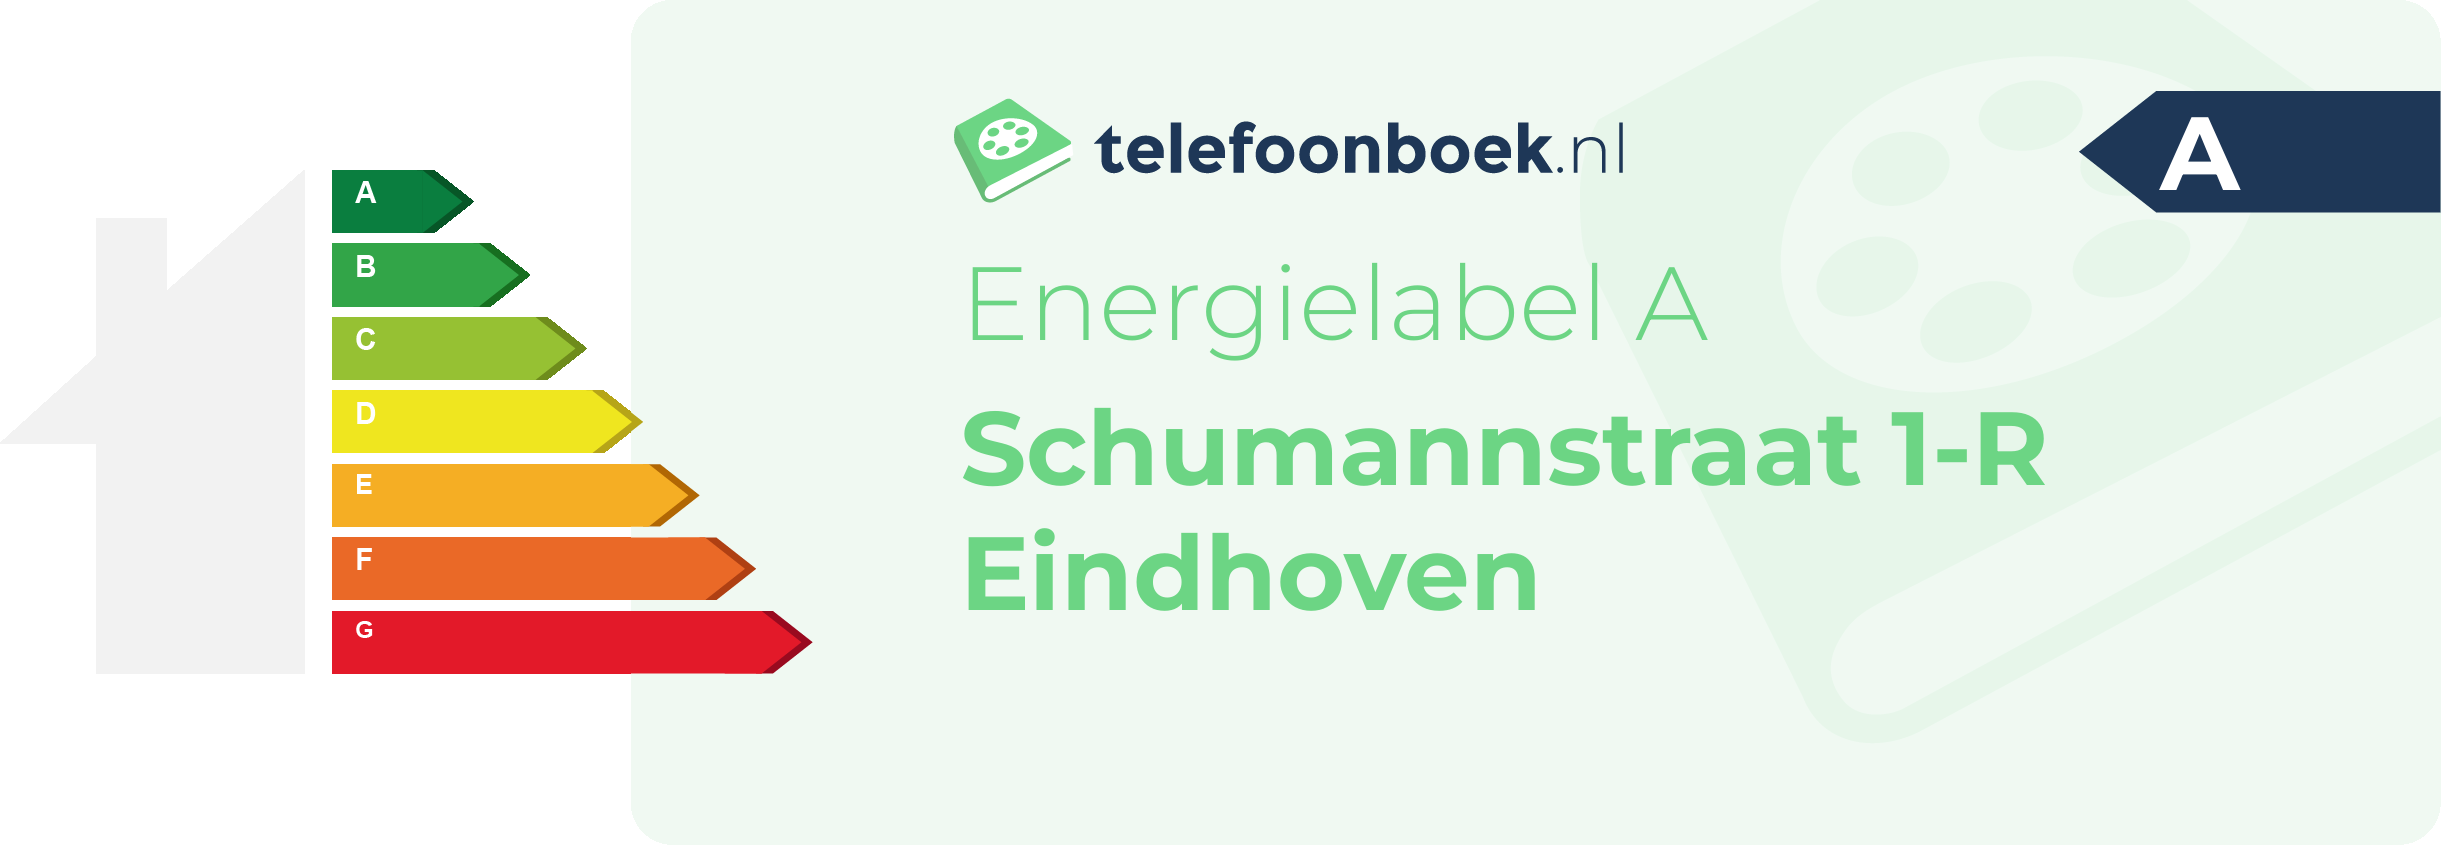 Energielabel Schumannstraat 1-R Eindhoven